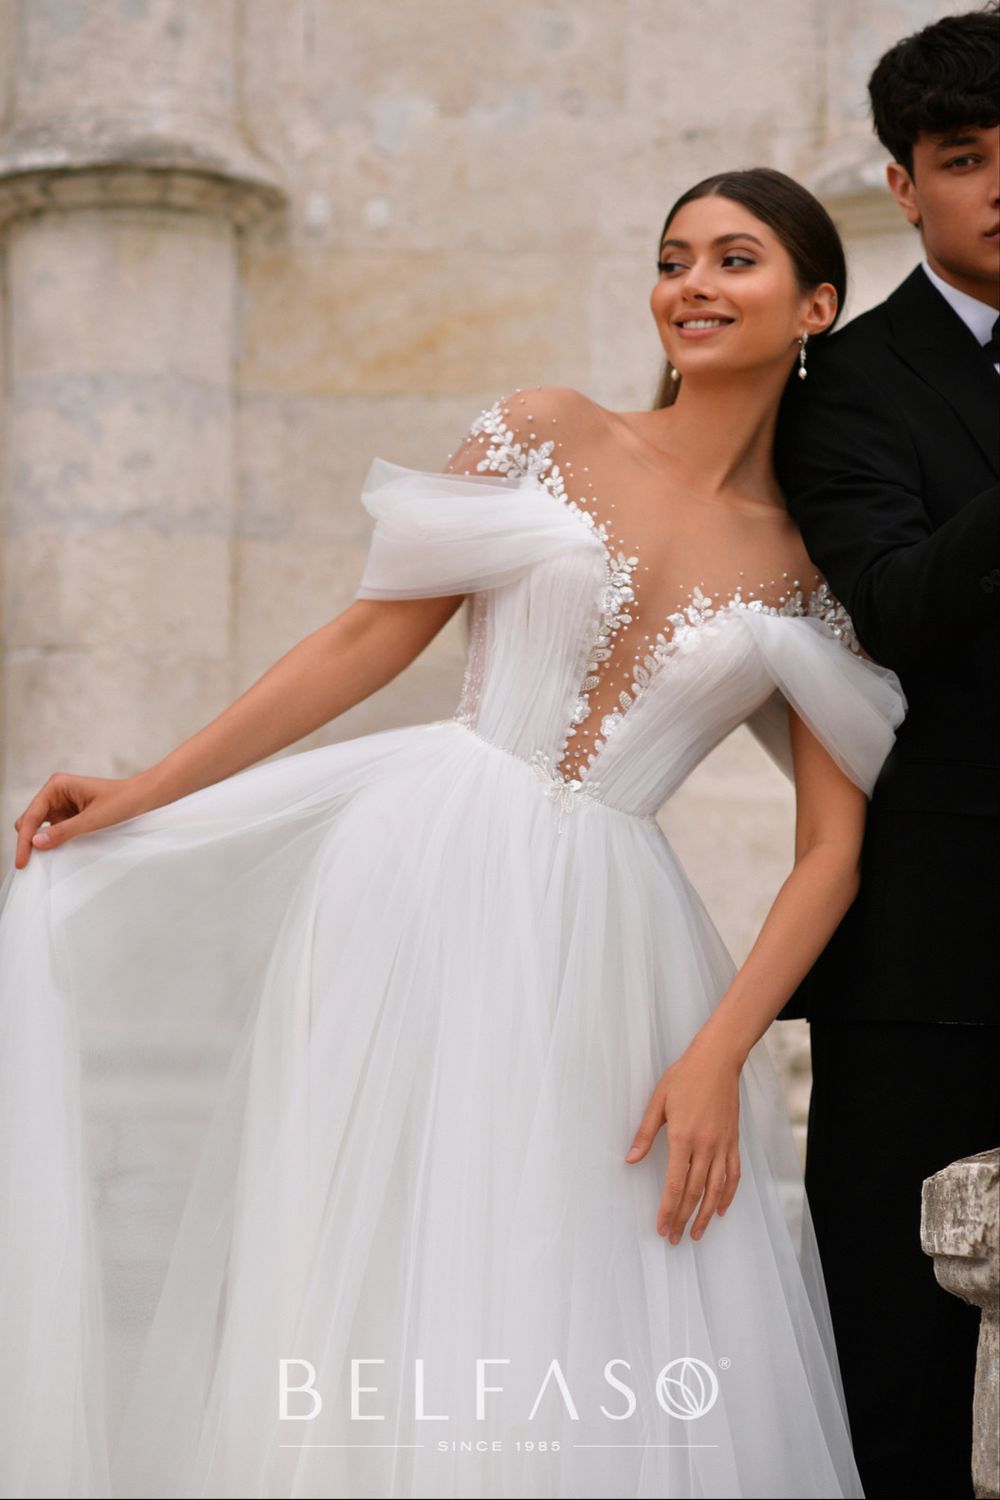 Свадебное платье Олимпия